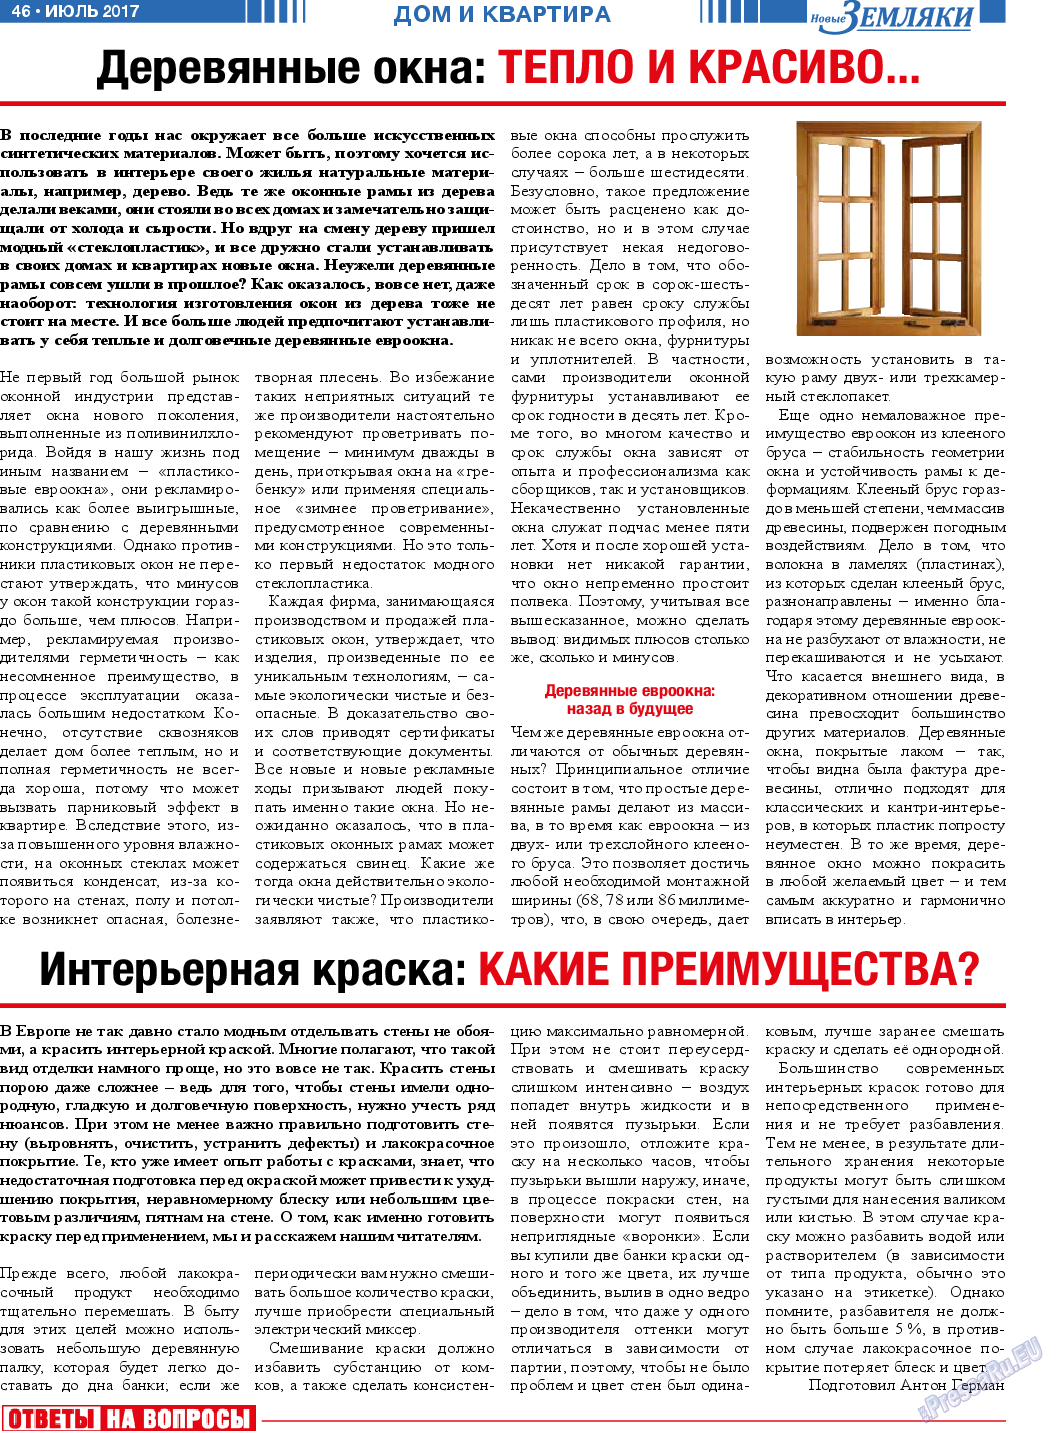 Новые Земляки (газета). 2017 год, номер 7, стр. 46